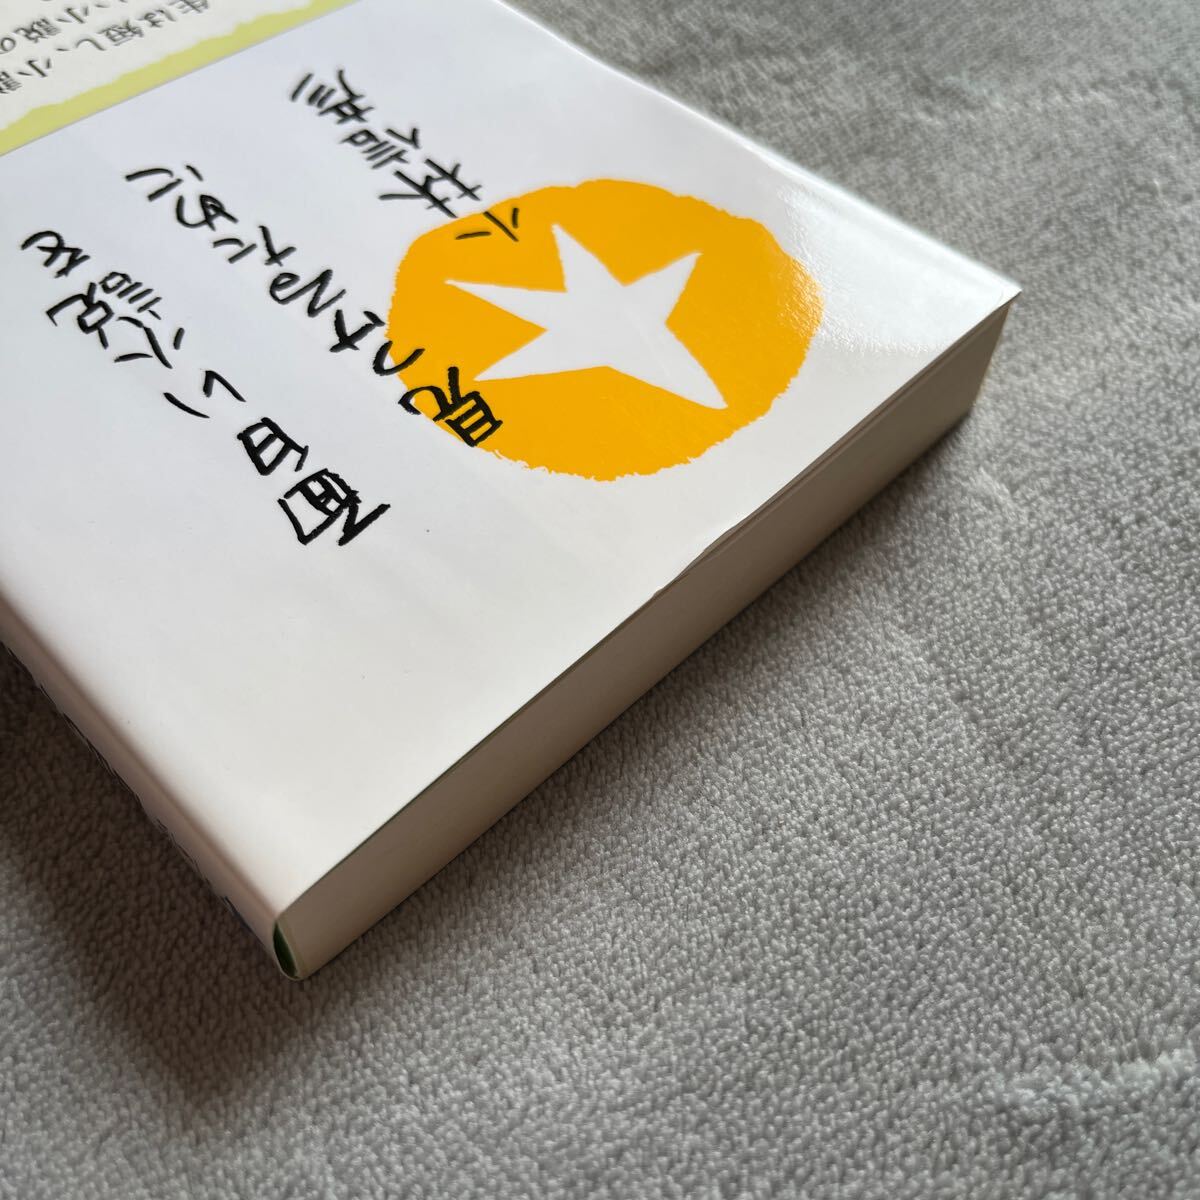 【署名本/初版】小林信彦『面白い小説を見つけるために』光文社 帯付き サイン本の画像5